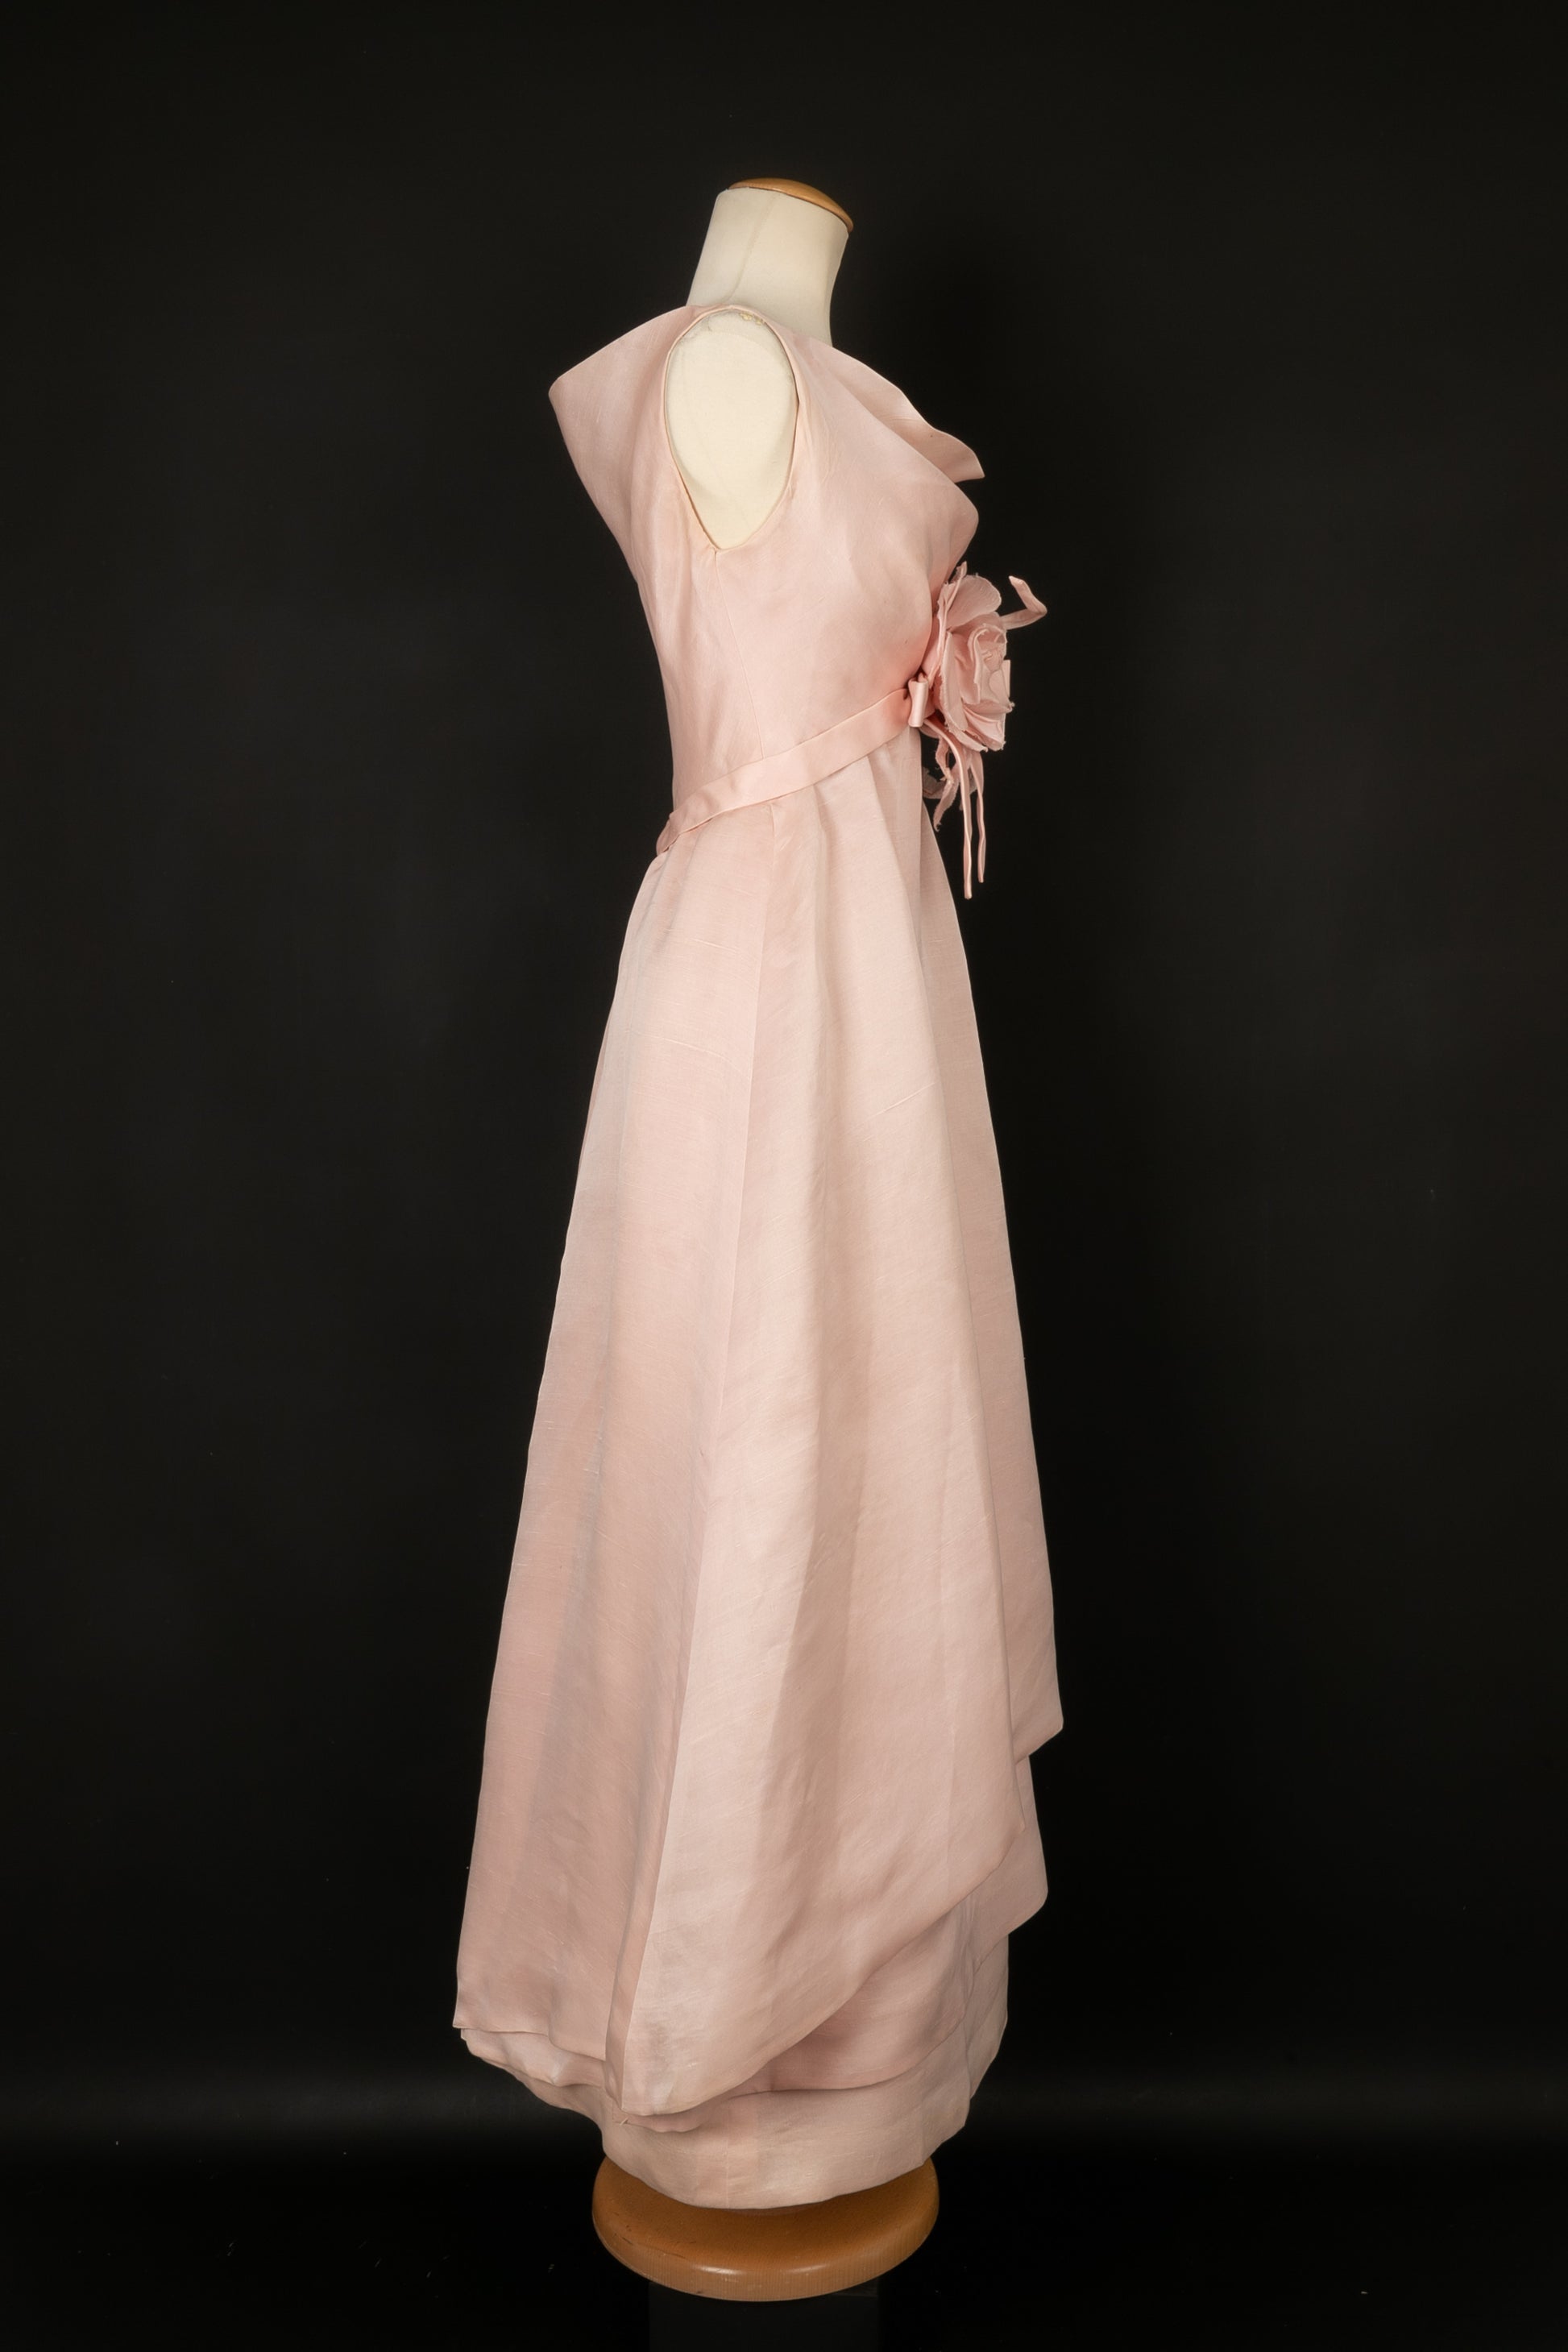 Robe rose Jeanne Lanvin Haute Couture circa 1965